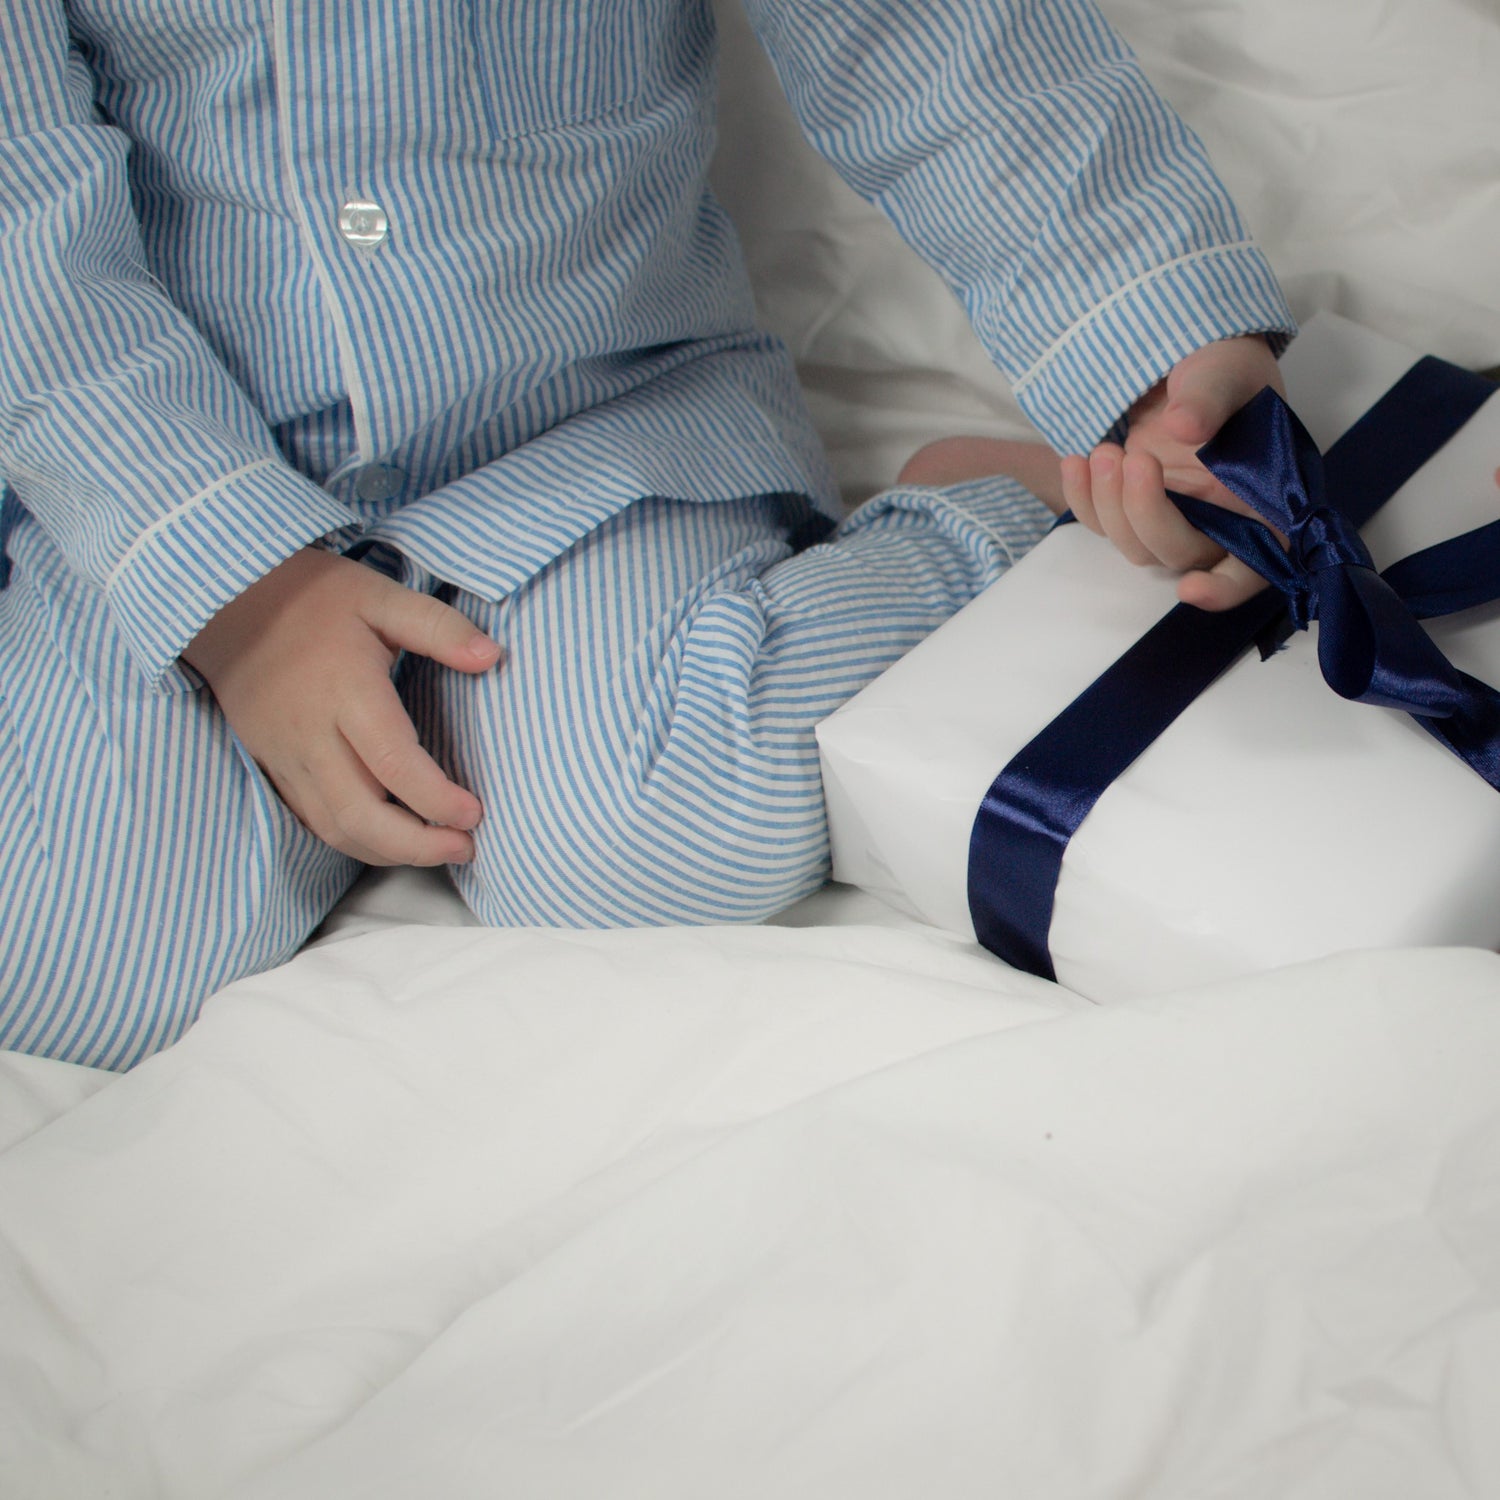 Pyjamas barn blå BABYBASE